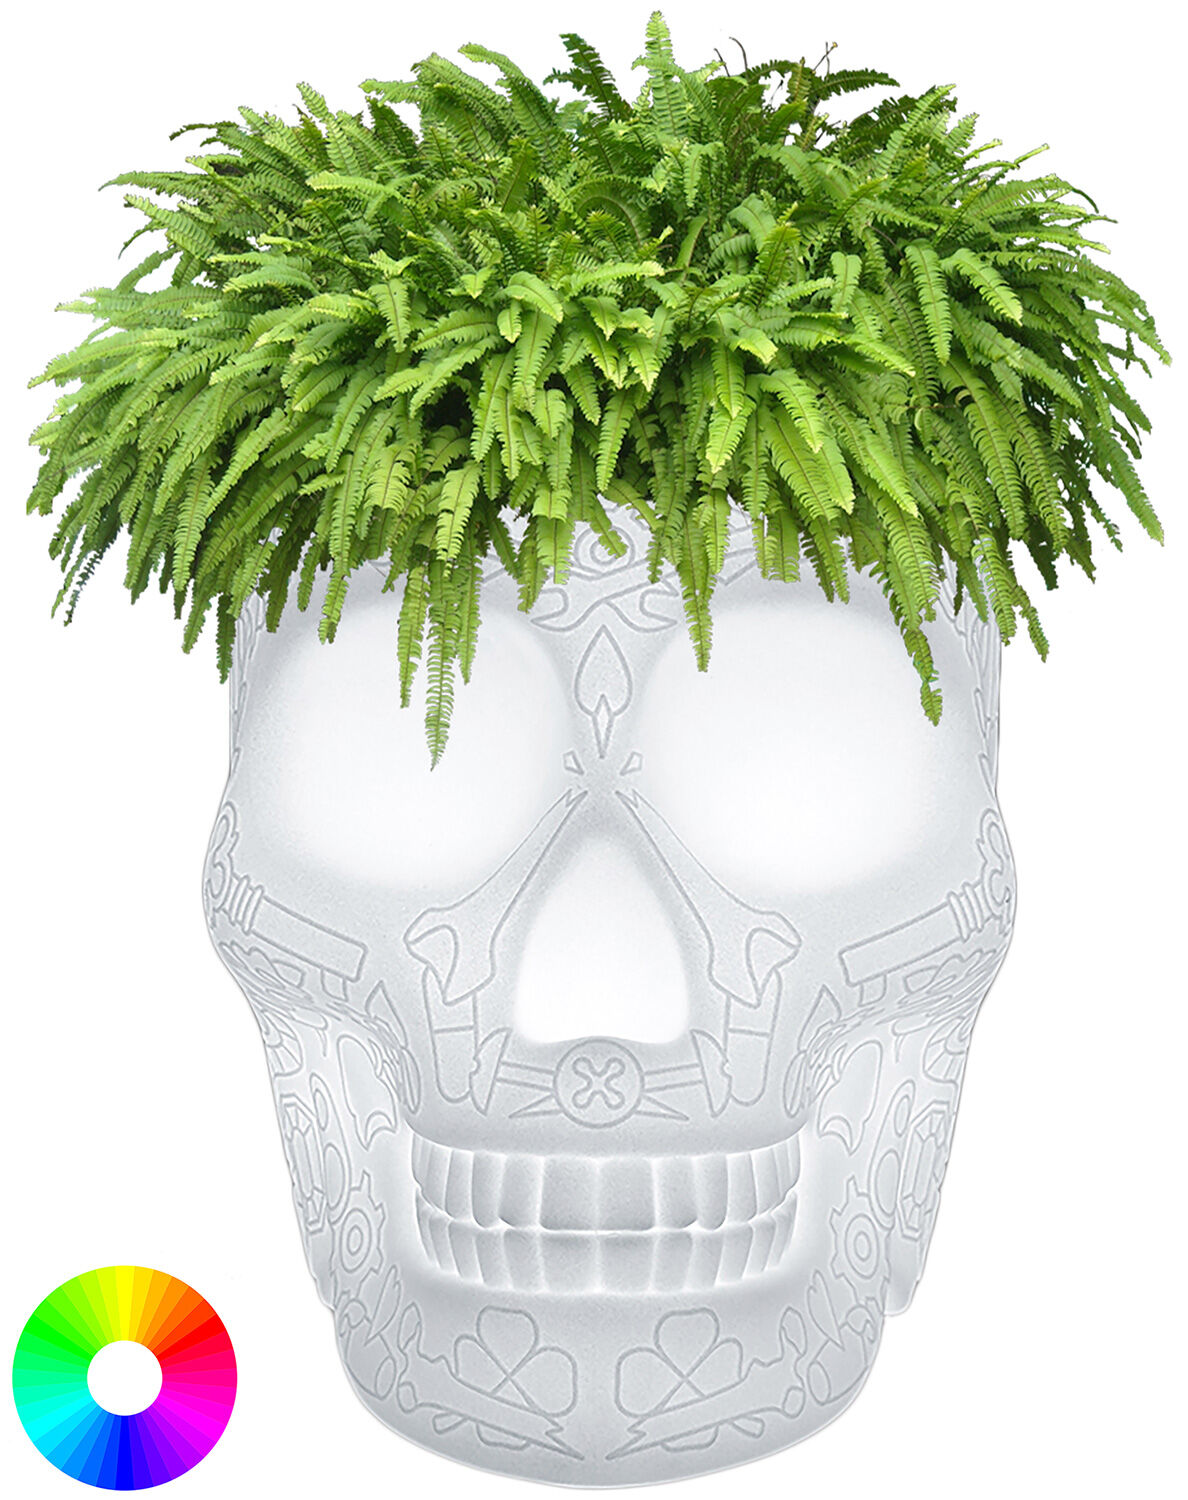 Kabellose LED-Designerlampe / Pflanzkübel "Mexican Skull" mit Farbwechsel - Design Studio Job von Qeeboo